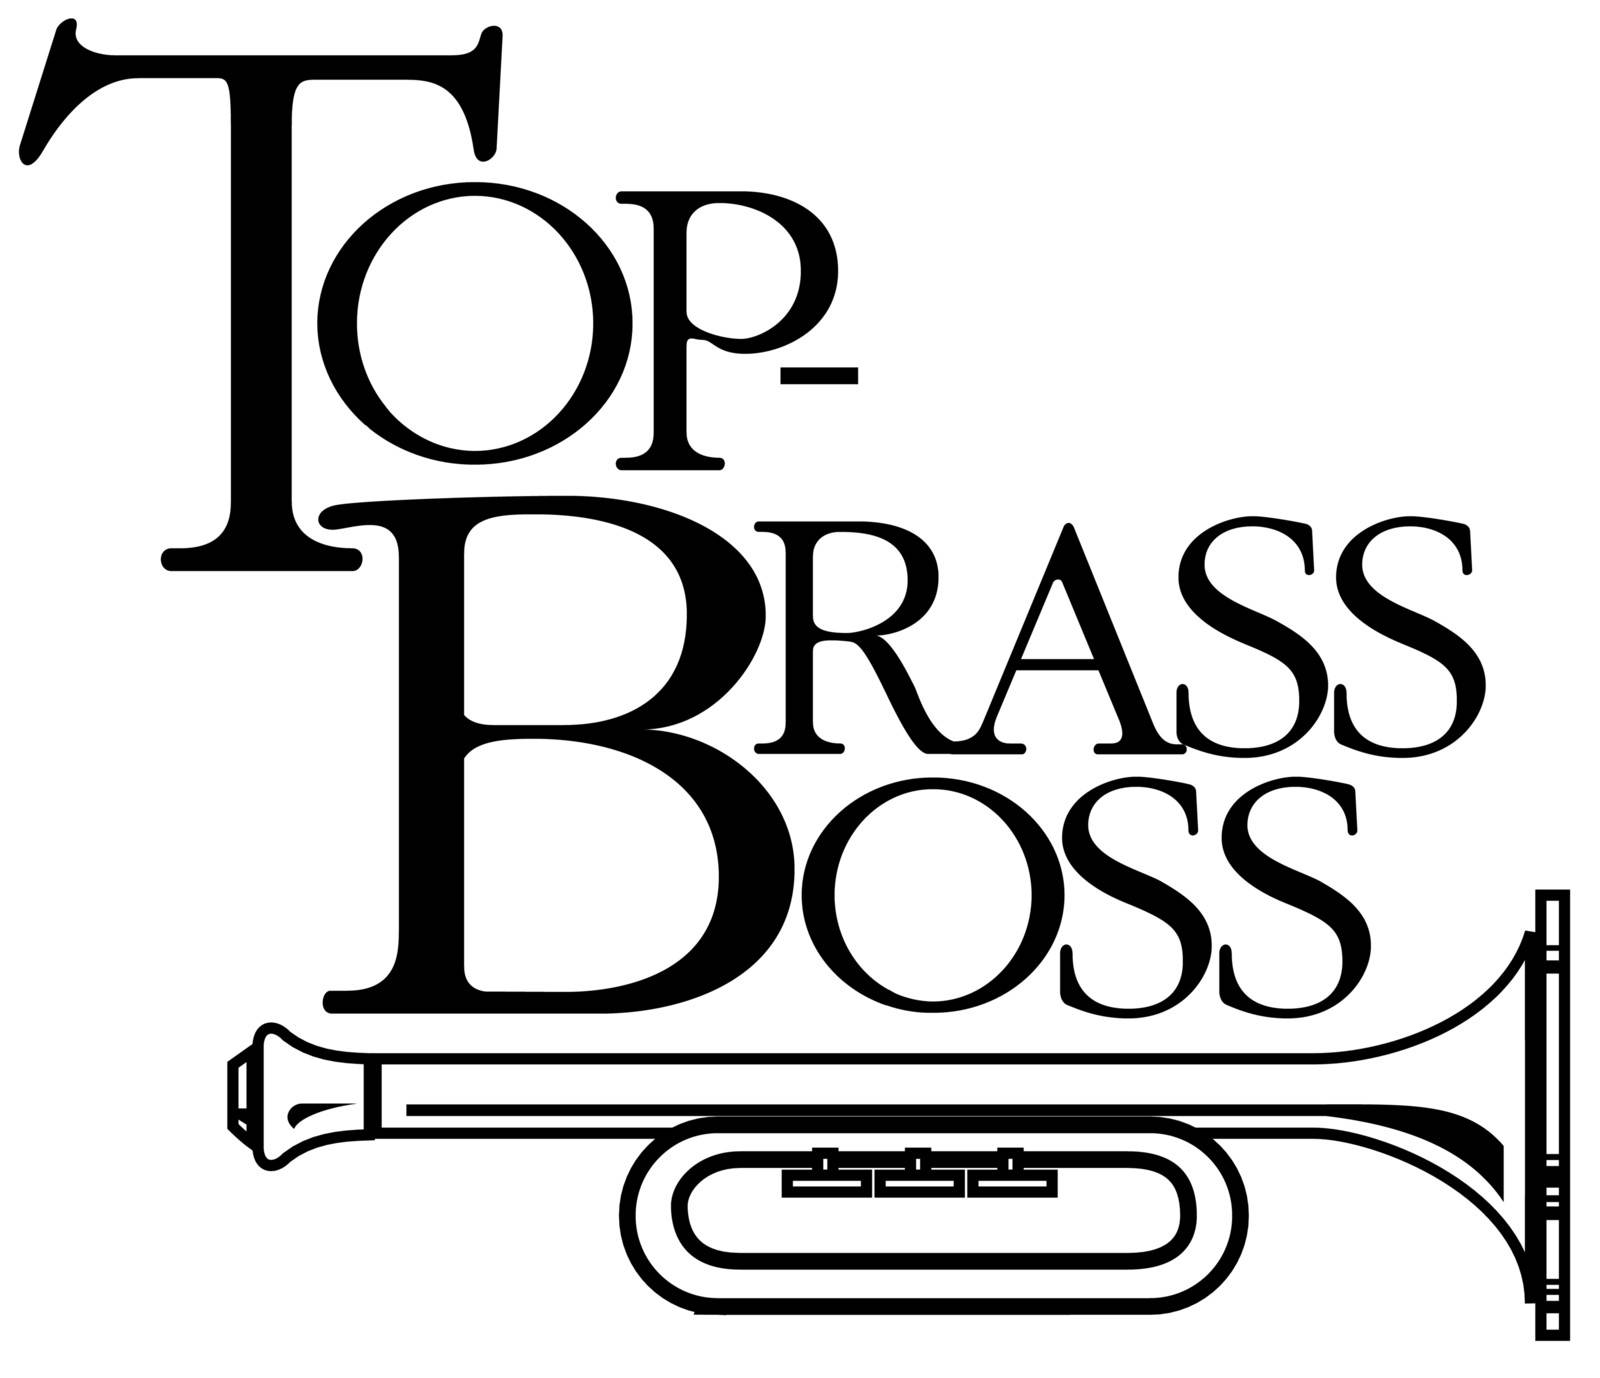 top brass boss